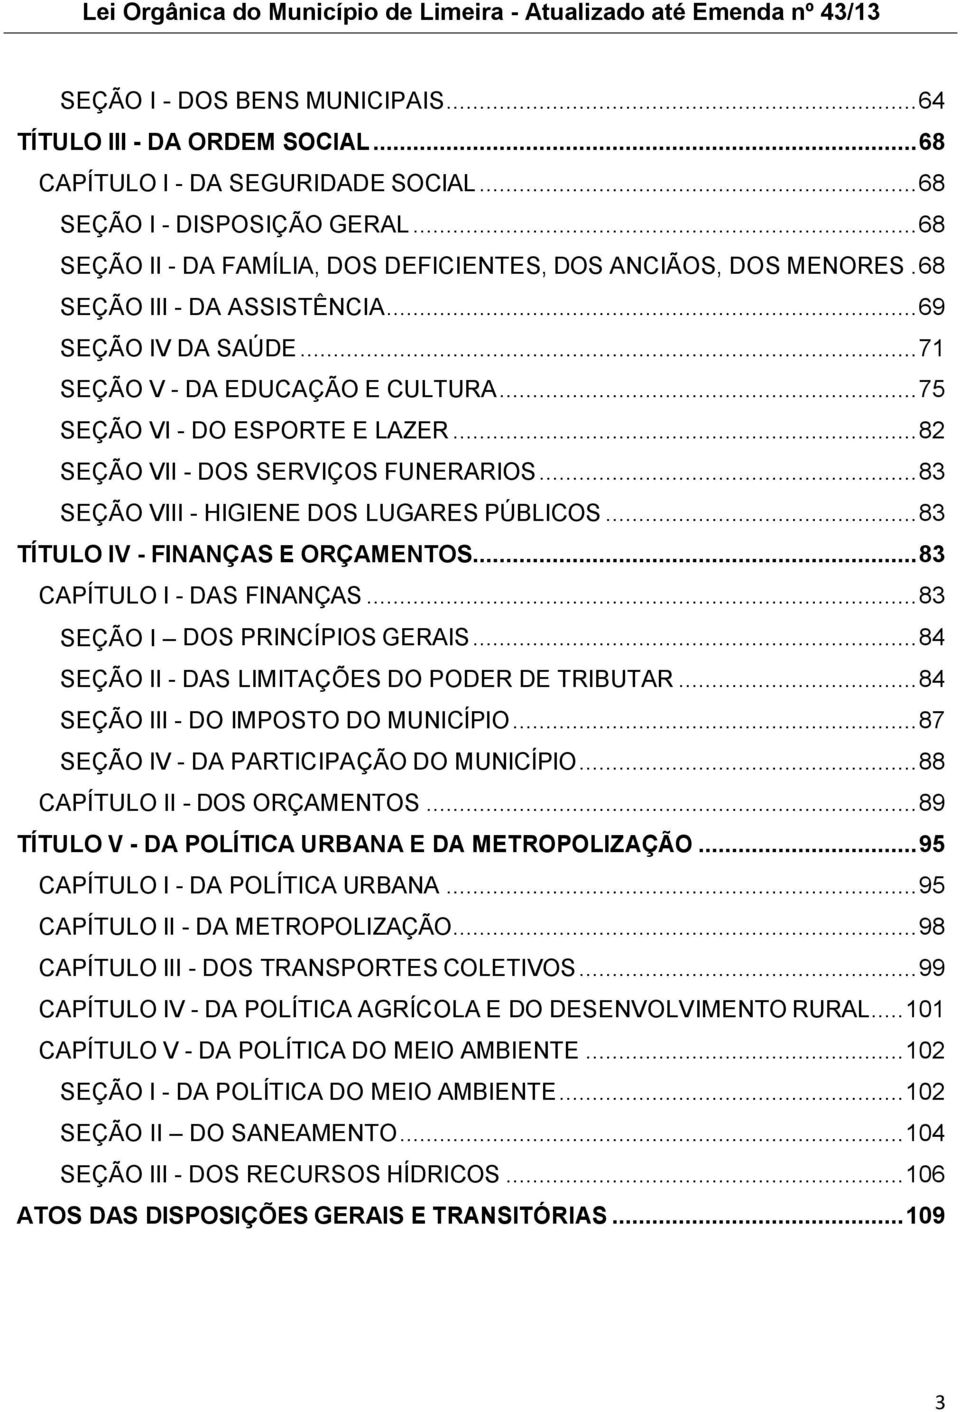 .. 82 SEÇÃO VII - DOS SERVIÇOS FUNERARIOS... 83 SEÇÃO VIII - HIGIENE DOS LUGARES PÚBLICOS... 83 TÍTULO IV - FINANÇAS E ORÇAMENTOS... 83 CAPÍTULO I - DAS FINANÇAS... 83 SEÇÃO I DOS PRINCÍPIOS GERAIS.